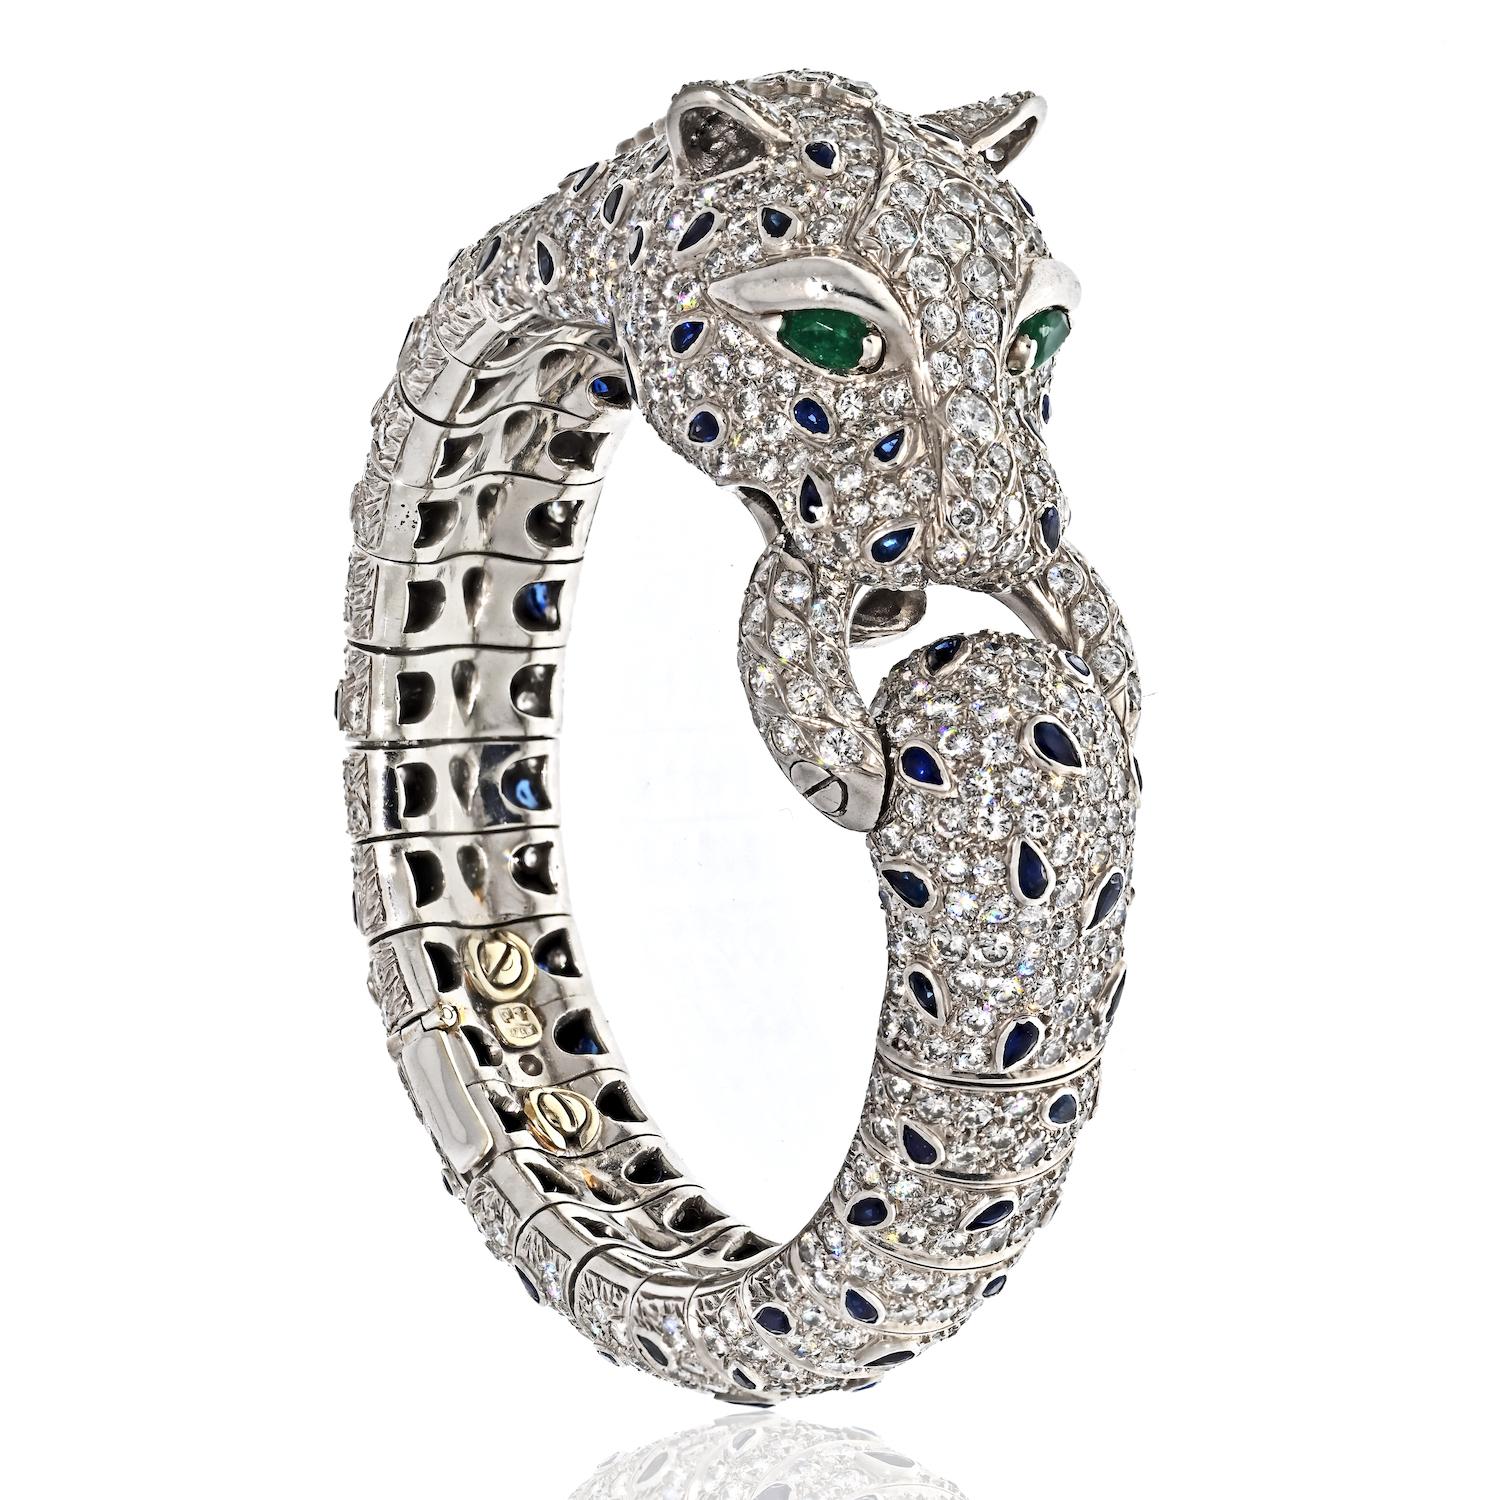 Voici un magnifique bijou de succession, le bracelet Panthère en platine avec diamants et saphirs. Ce bracelet exquis présente le motif iconique de la panthère, représentée comme une créature féroce et élégante, mordant sur un anneau éblouissant.